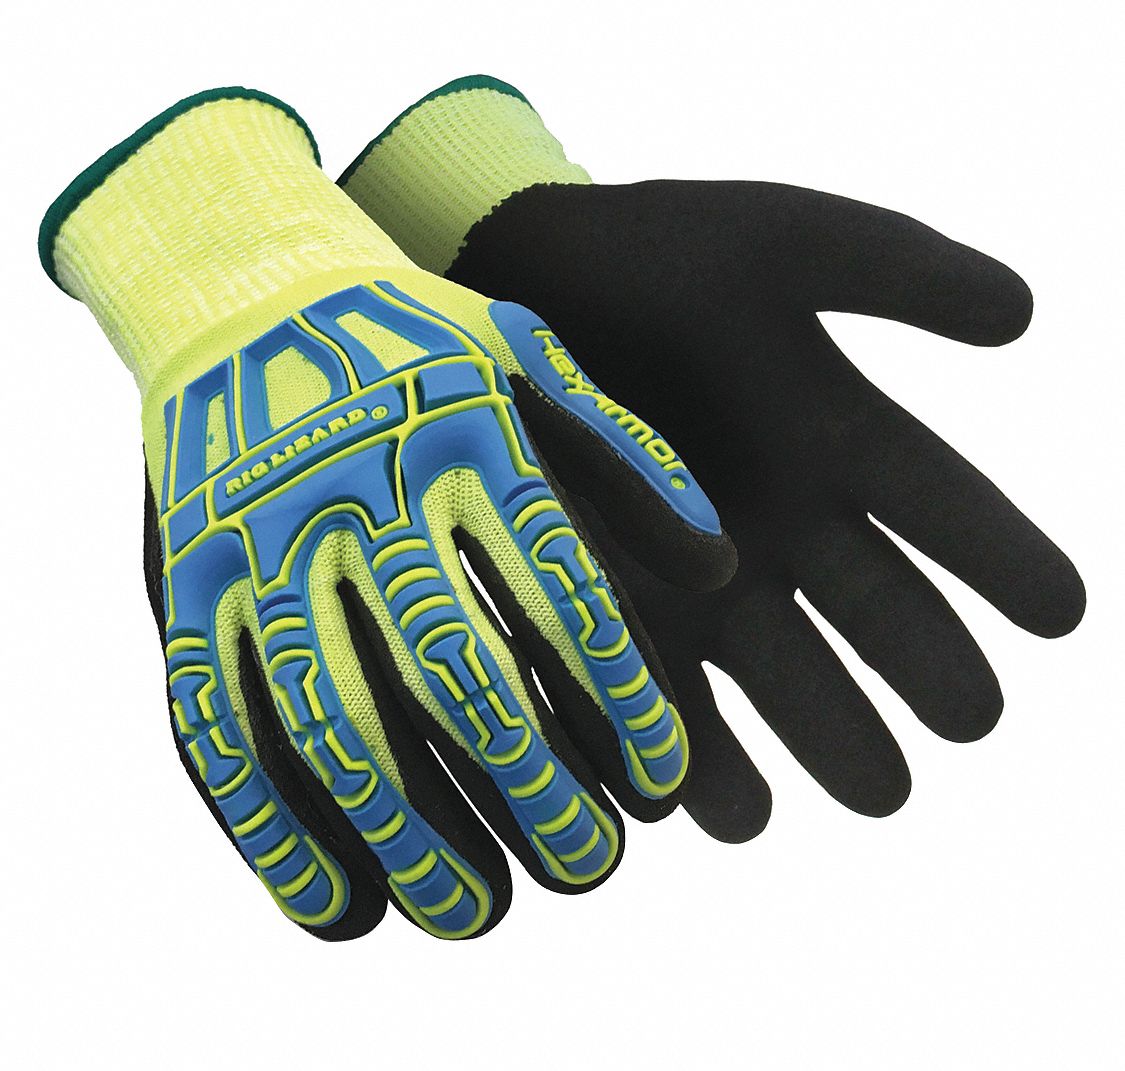 HEXARMOR Mechanics Gloves, 1 PR - 60MN68|2098-XXS (5) - Grainger